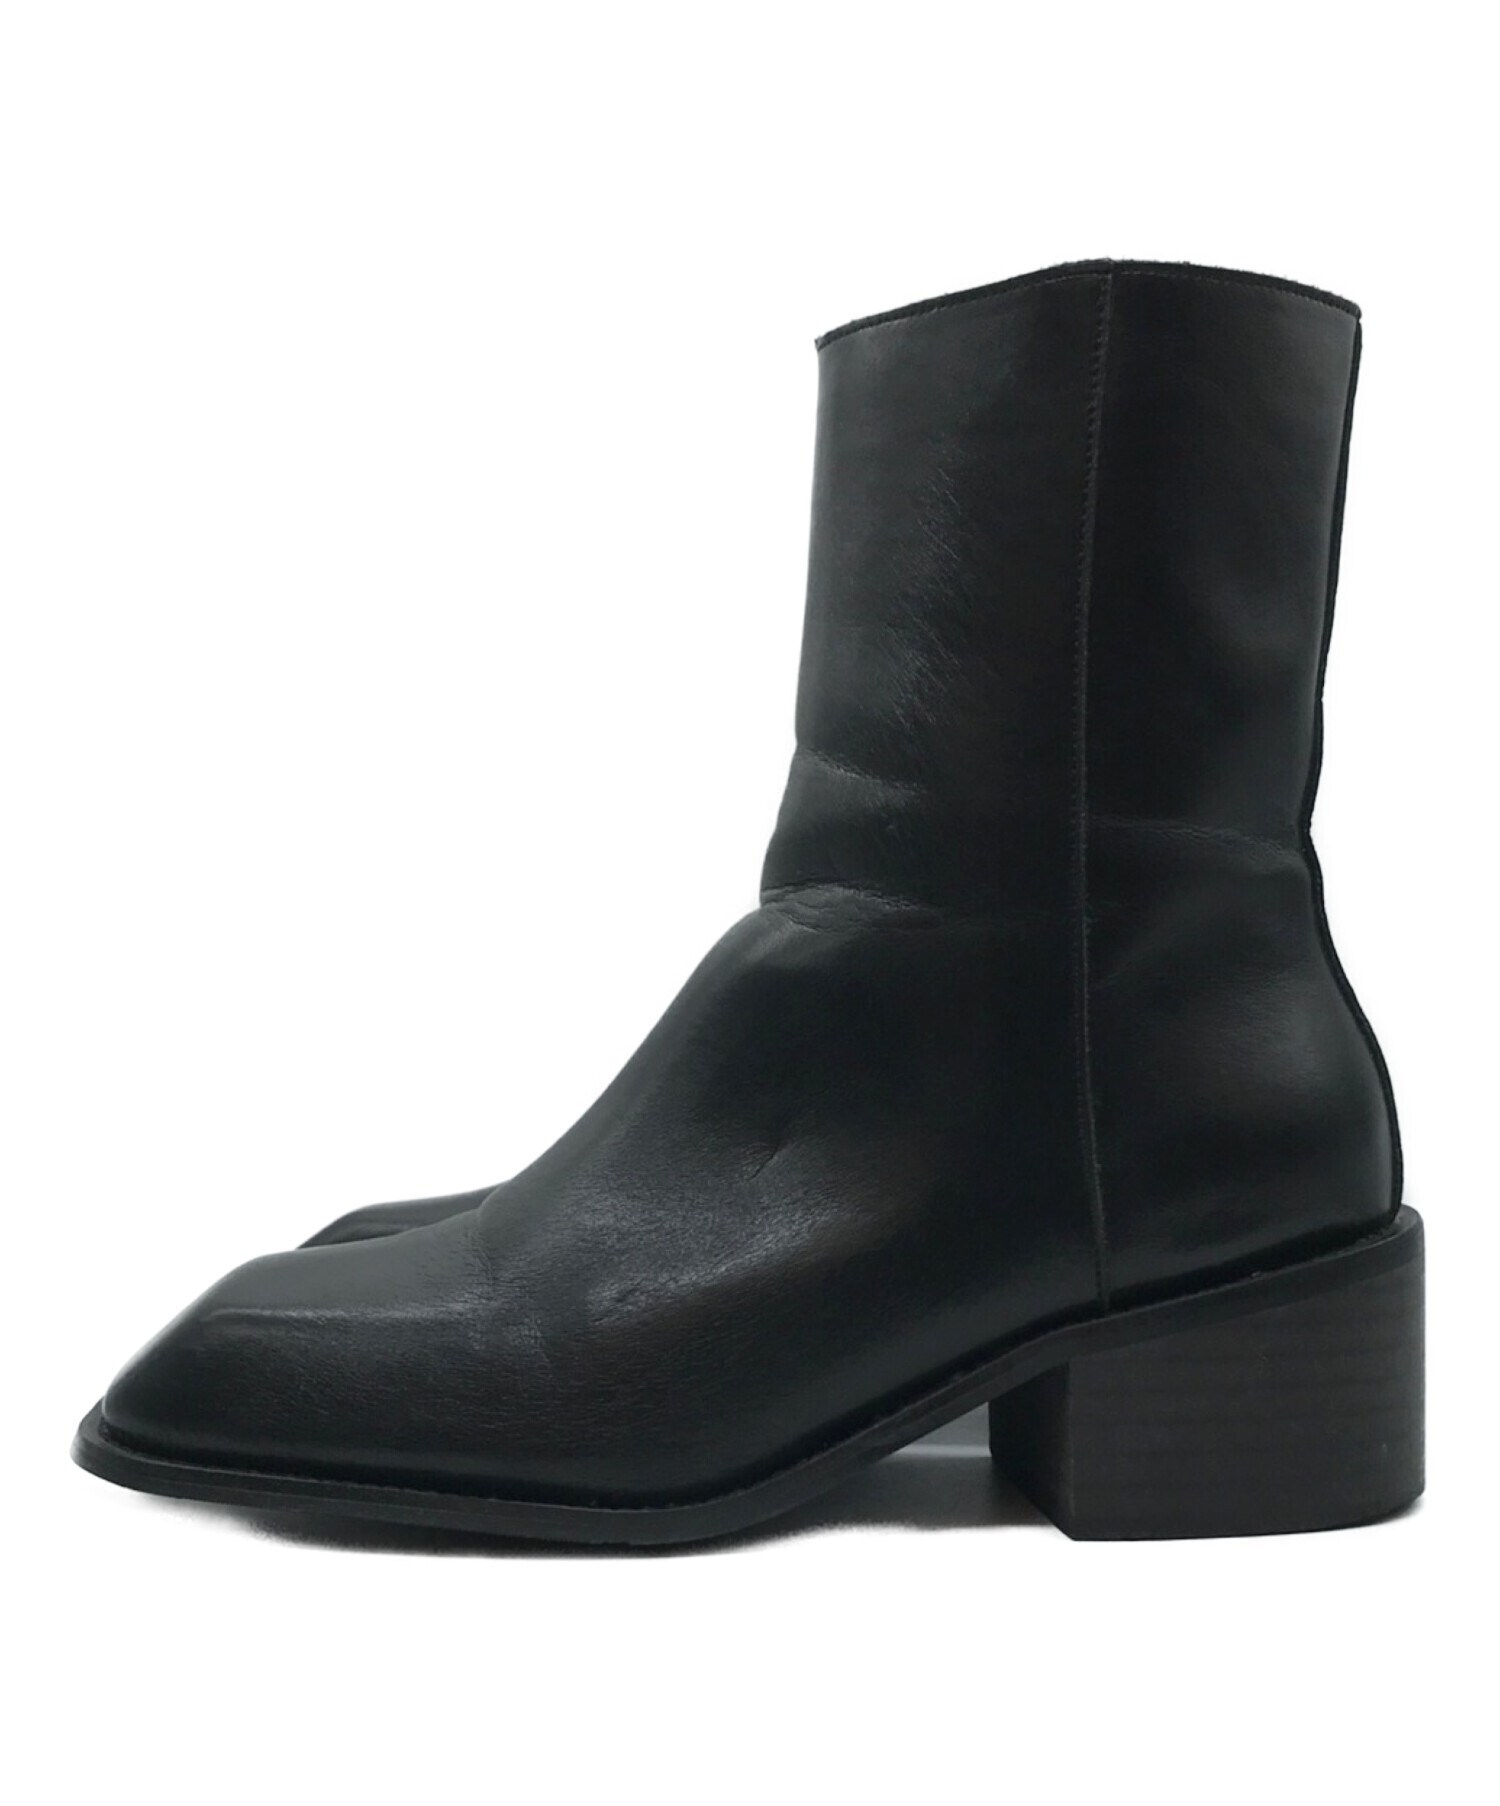 soerte (ソエルテ) Square toe leather boots スクエアトゥレザーブーツ ブラック サイズ:41